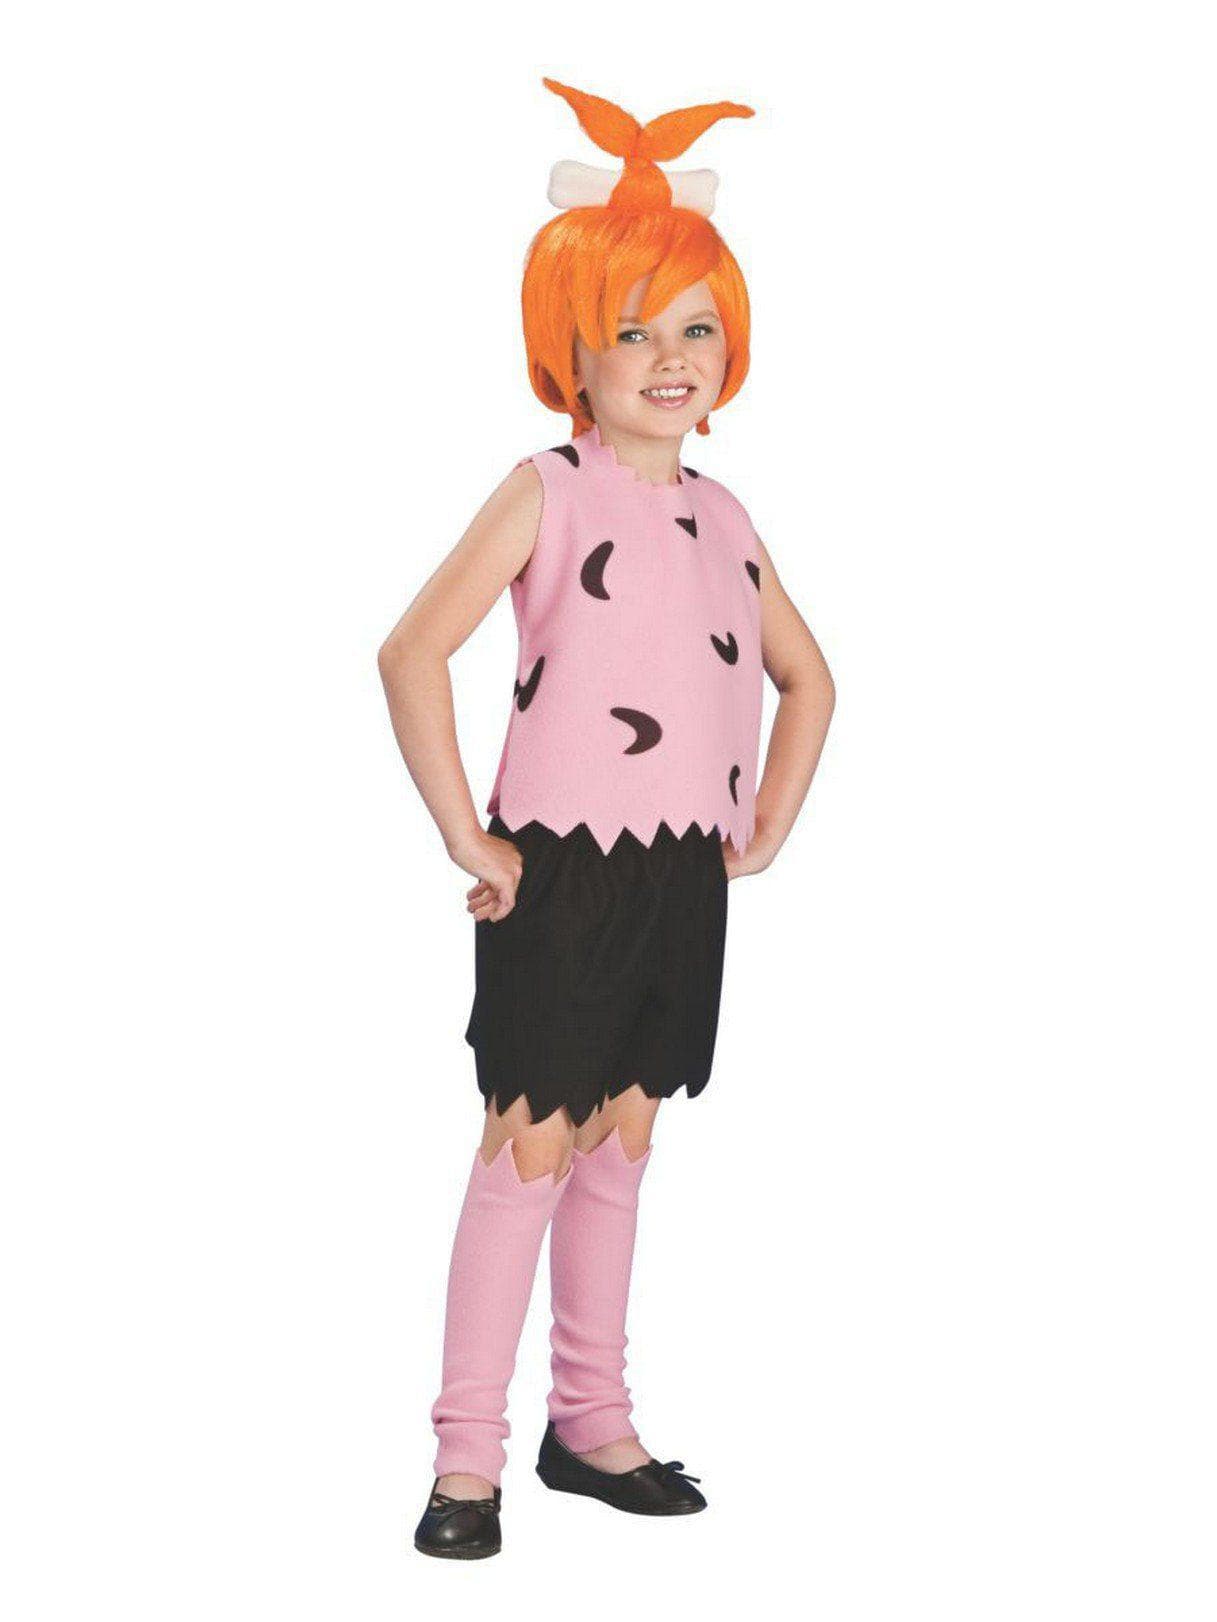 The Flintstones Pebbles Kids Costume